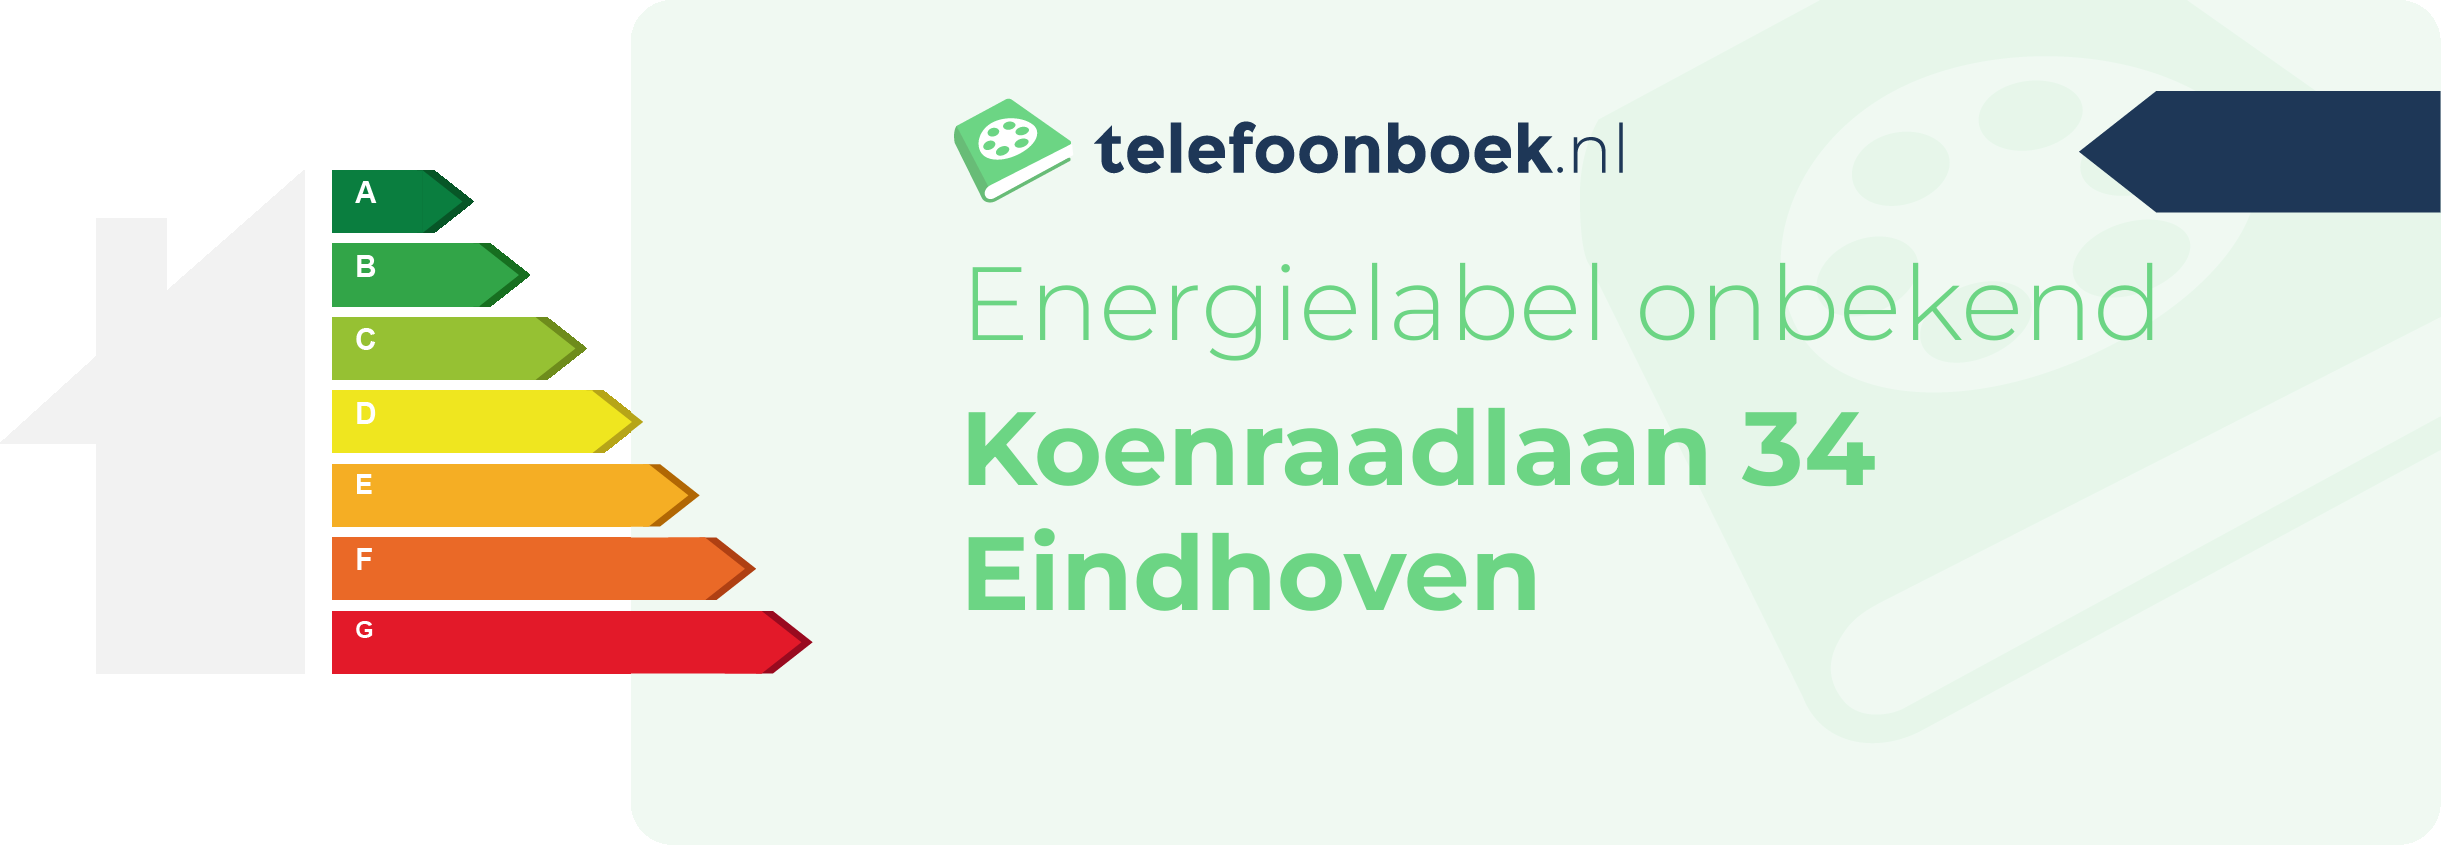 Energielabel Koenraadlaan 34 Eindhoven